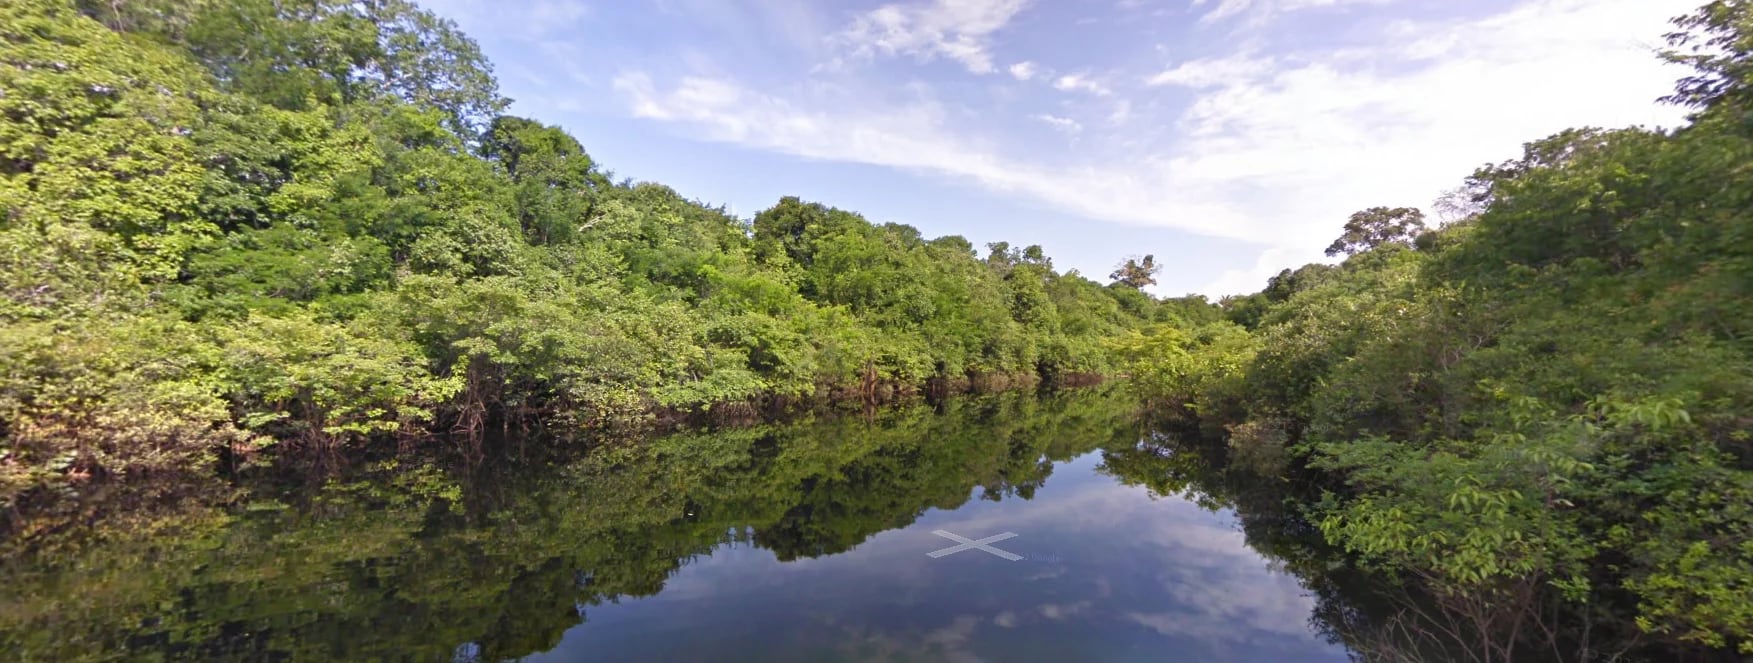 El Río Negro tiene 2250 km de longitud (captura de Street View).